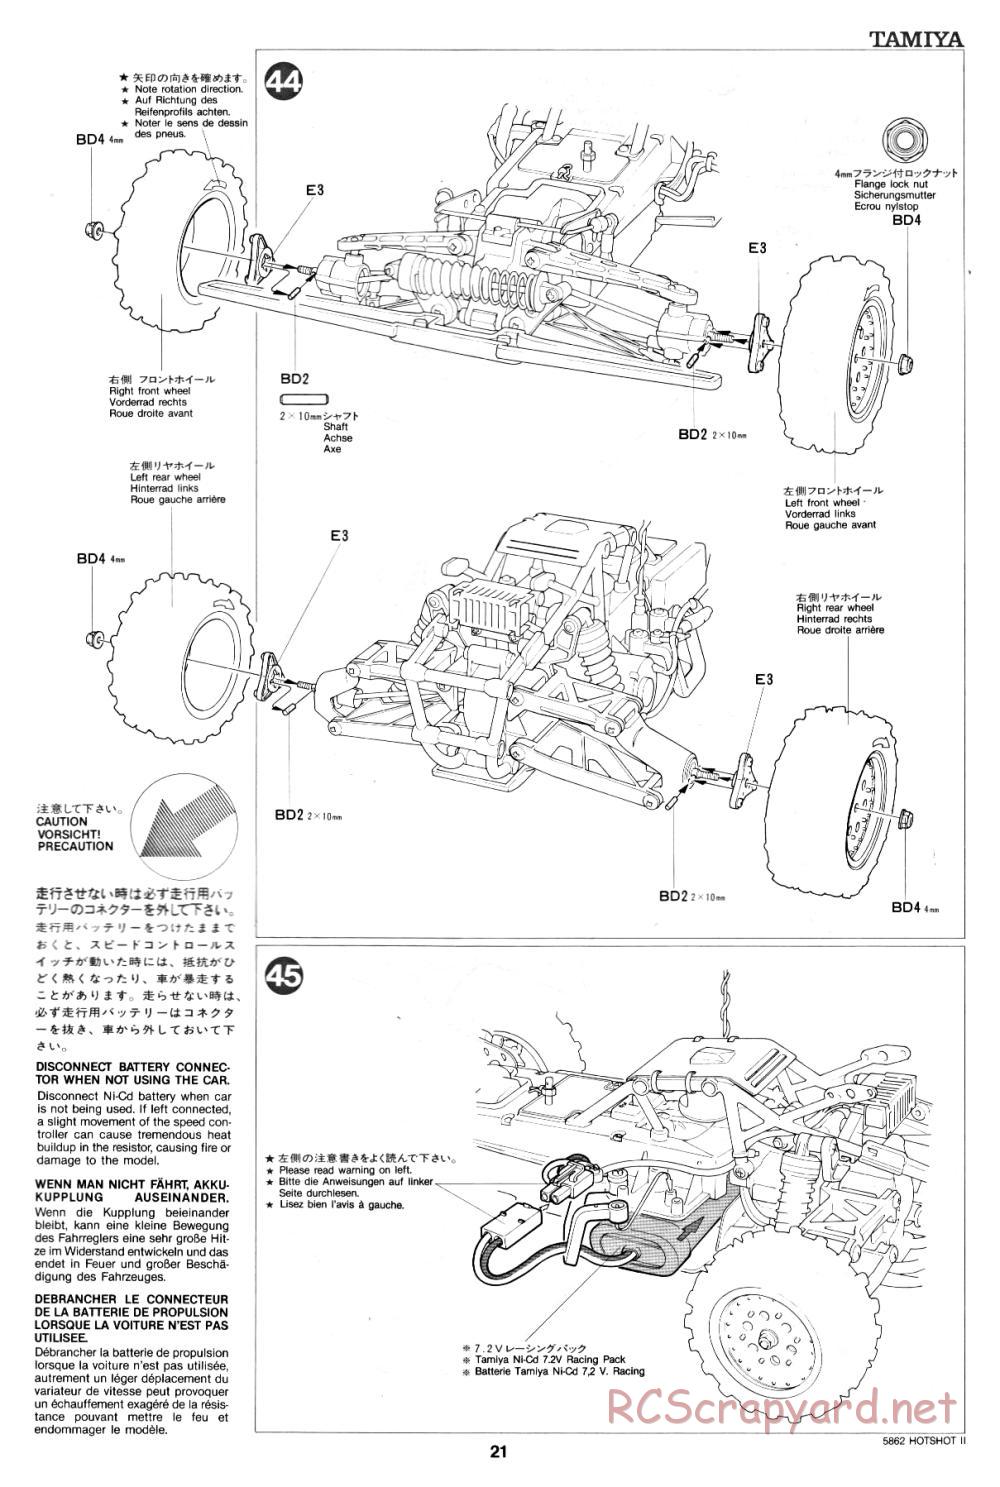 Tamiya - Hot-Shot II - 58062 - Manual - Page 21